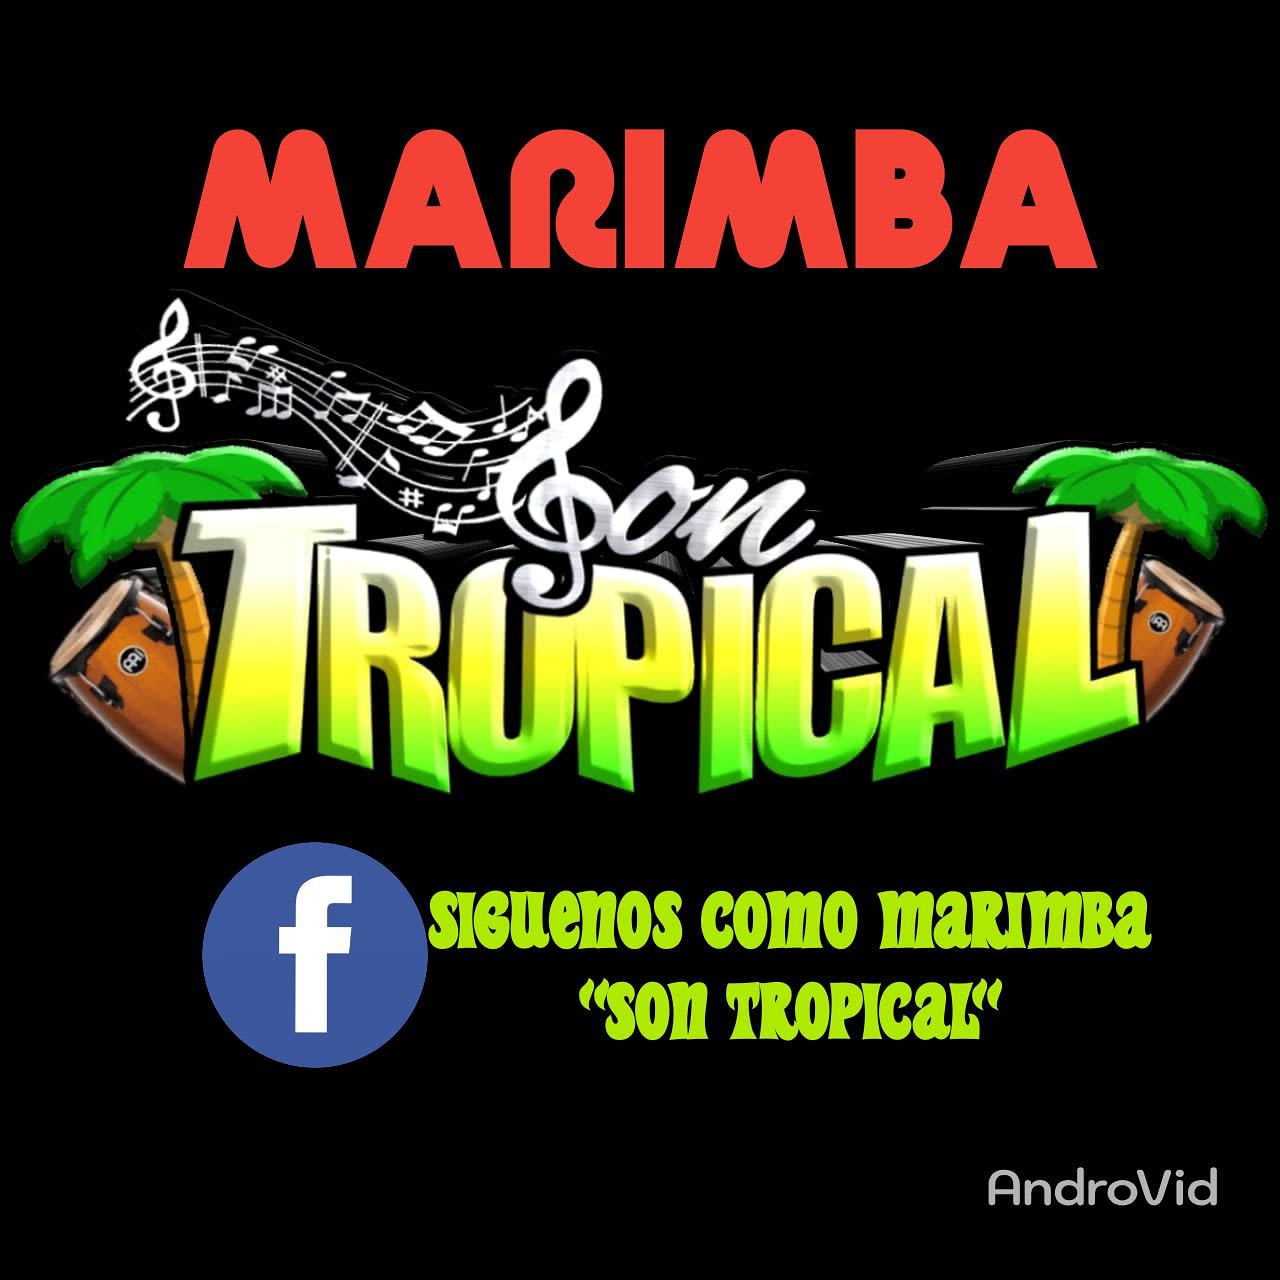 Marimba Son Tropical